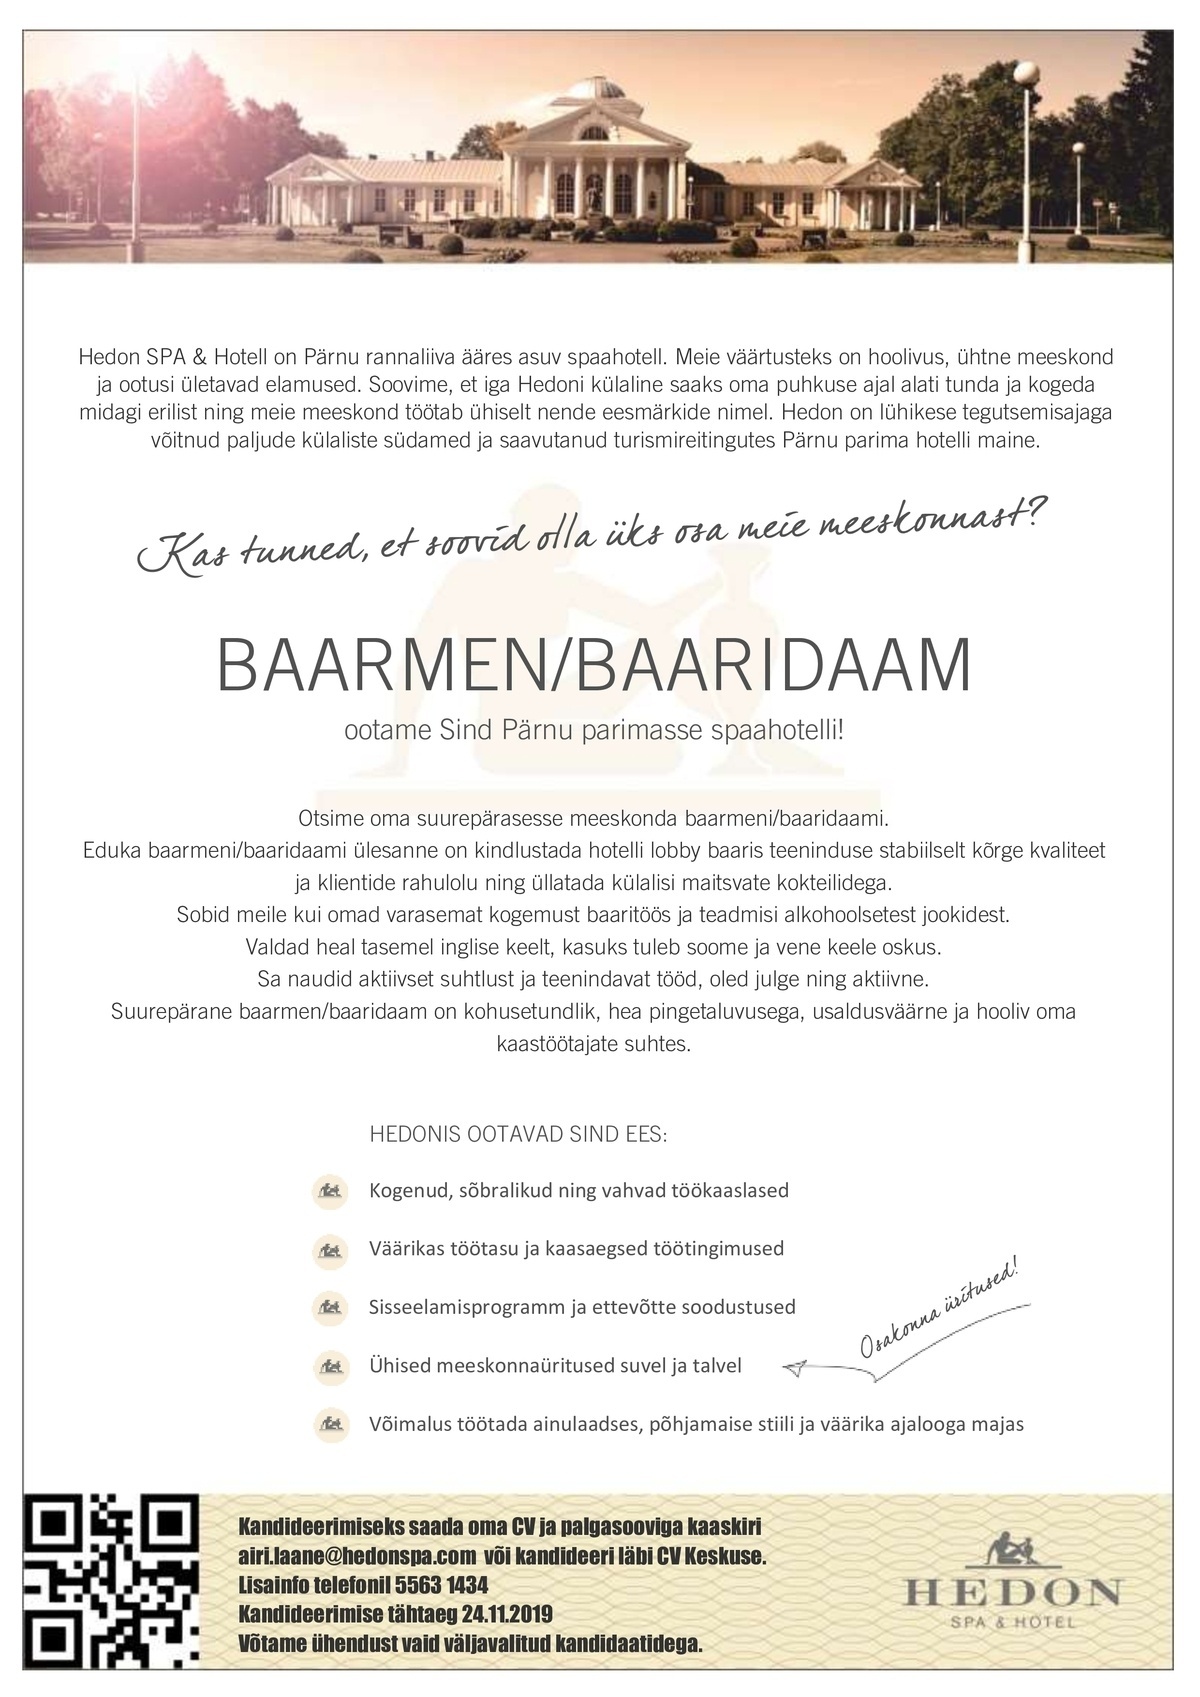 Supeluse Hotell OÜ Hedon SPA & HOTEL Baarmen/baaridaam